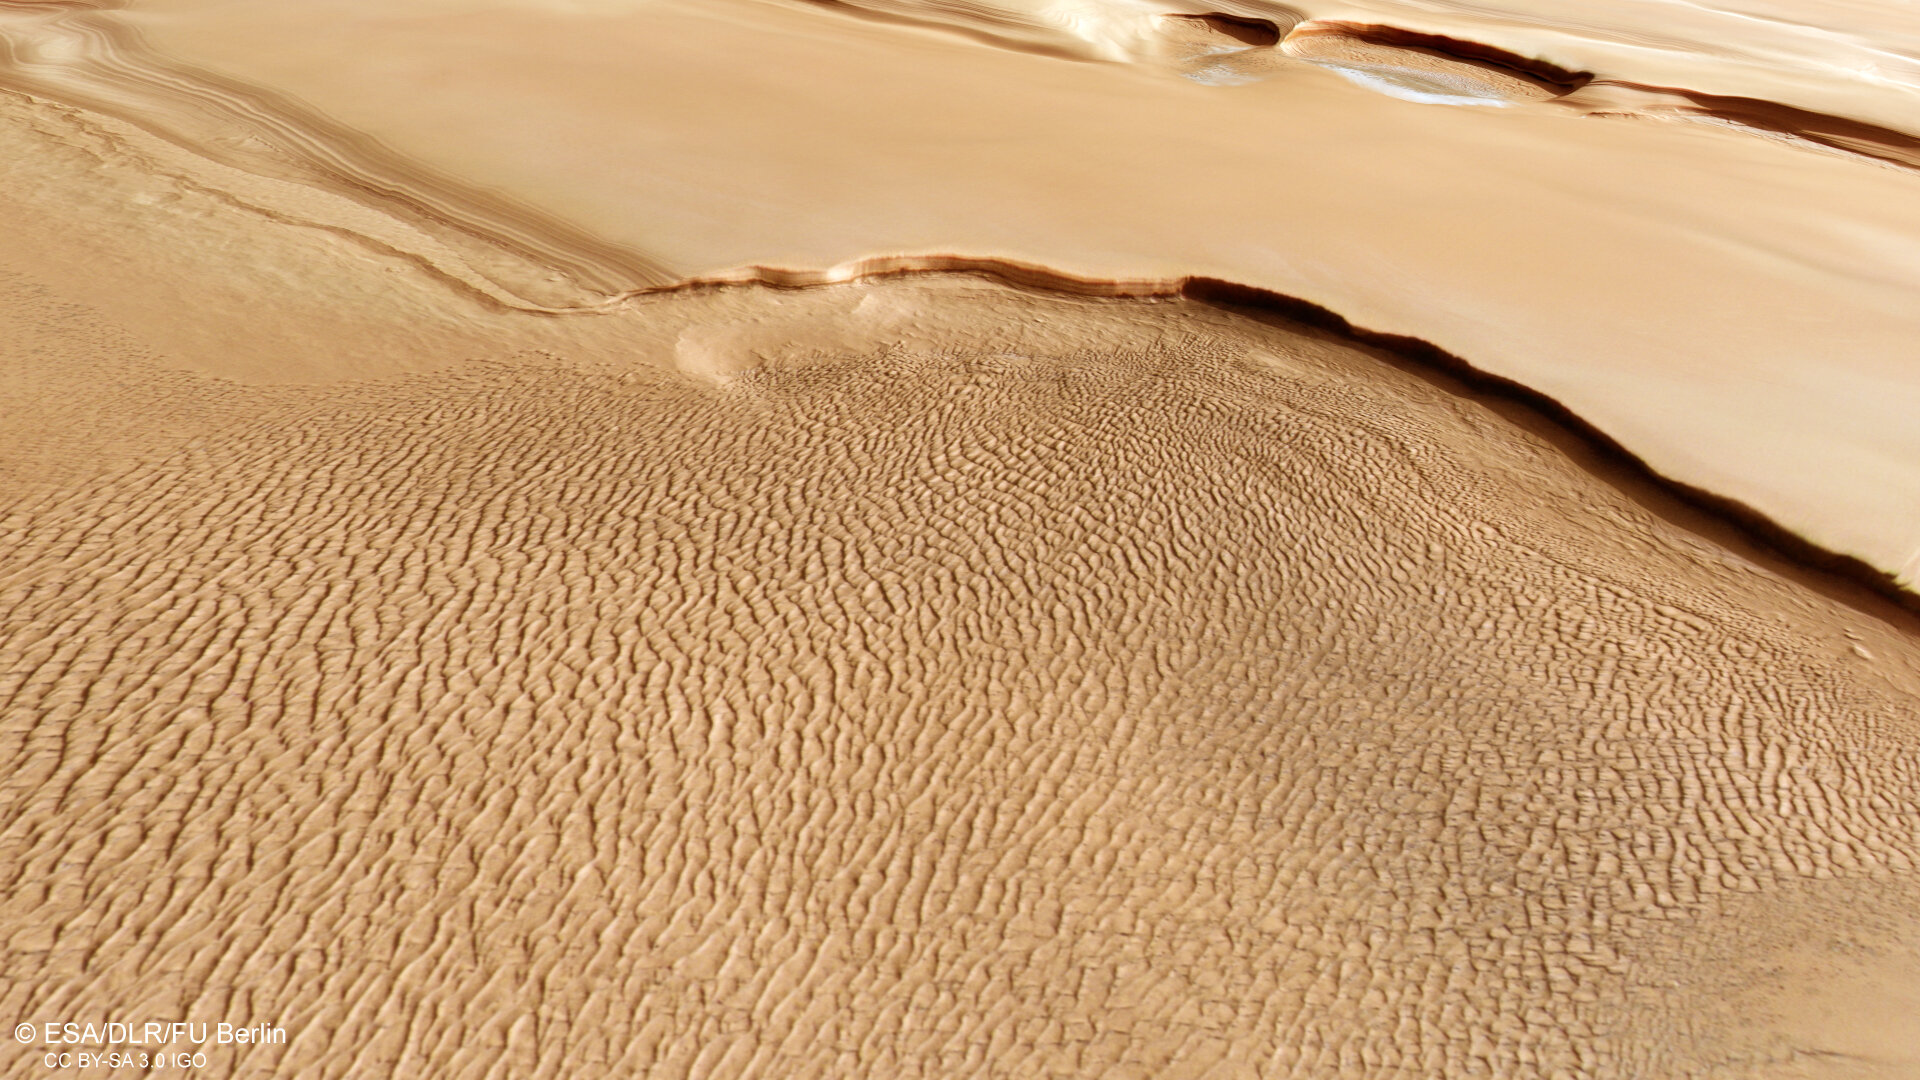 Pogled iz perspektive Marsove sjeverne polarne regije. Zasluge: ESA/DLR/FU Berlin.